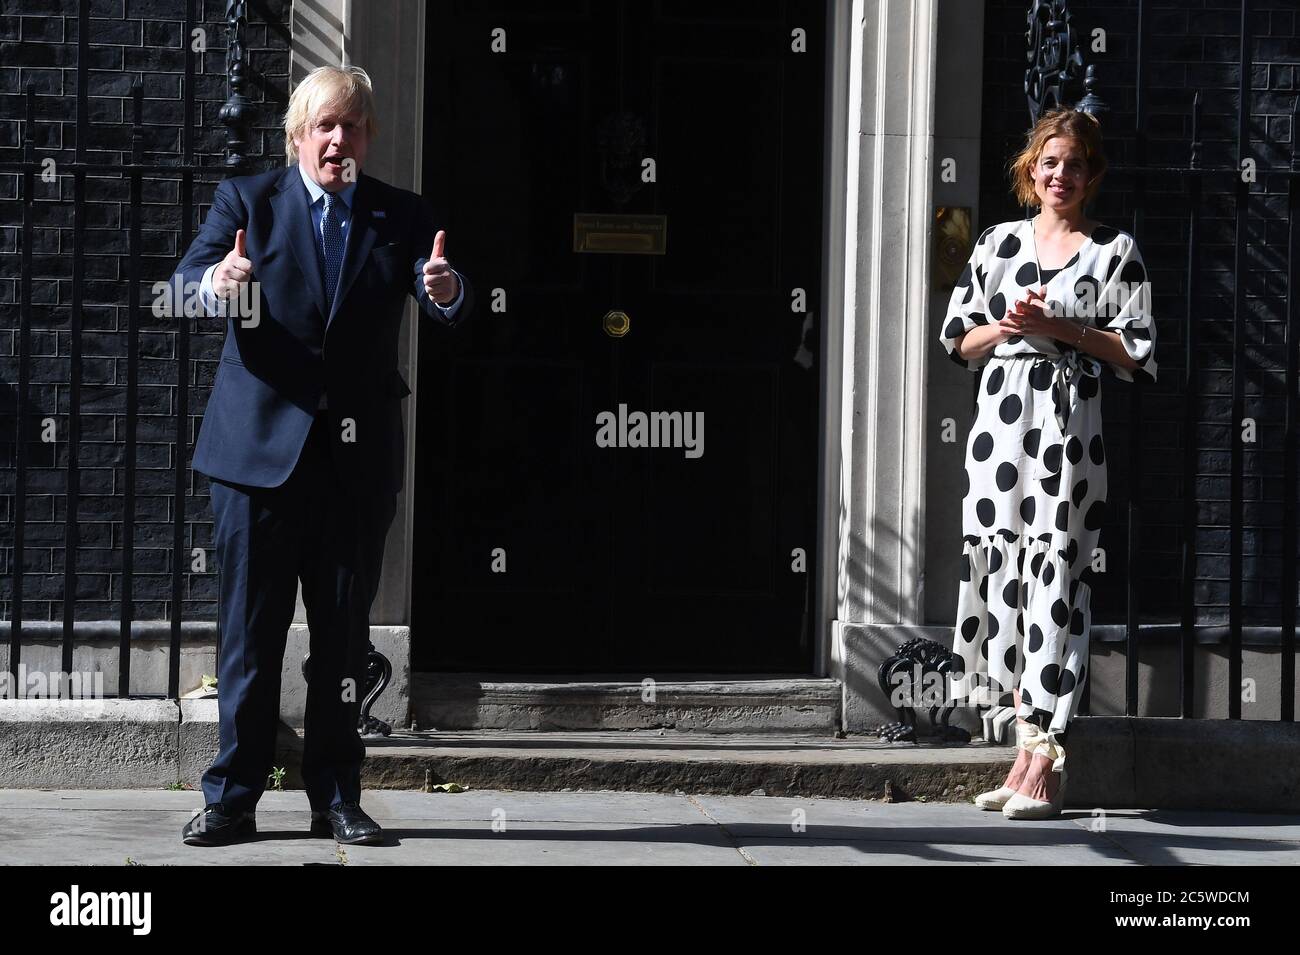 Nell'ambito delle celebrazioni per il compleanno dell'NHS, il primo ministro Boris Johnson e Annemarie Plas, fondatore di Clap for Our Carers, fuori 10 Downing Street, Londra, si uniscono alla pausa per applausi per salutare il 72° compleanno dell'NHS. Foto Stock